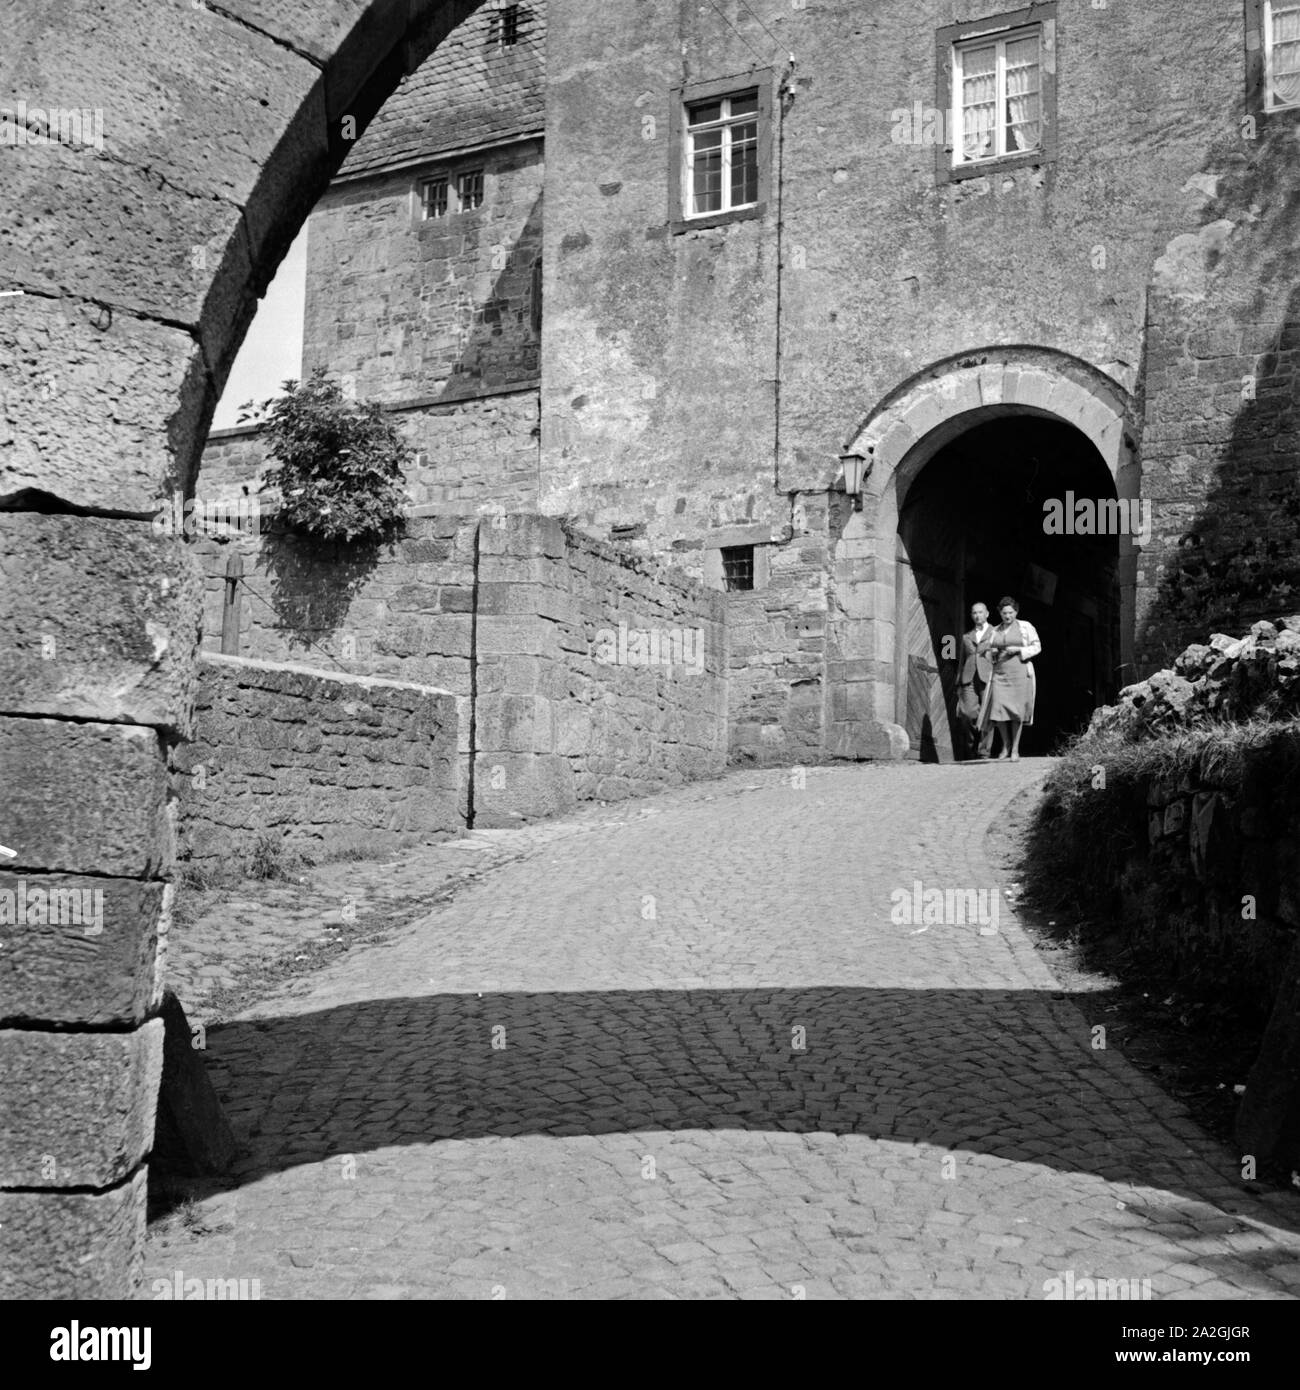 Aufgang zum Eingang zu Waldeck am Edersee en Hesse, Deutschland 1930 er Jahre. L'accès et l'entrée au château de Waldeck, près de lac Edersee en Hesse, Allemagne 1930. Banque D'Images